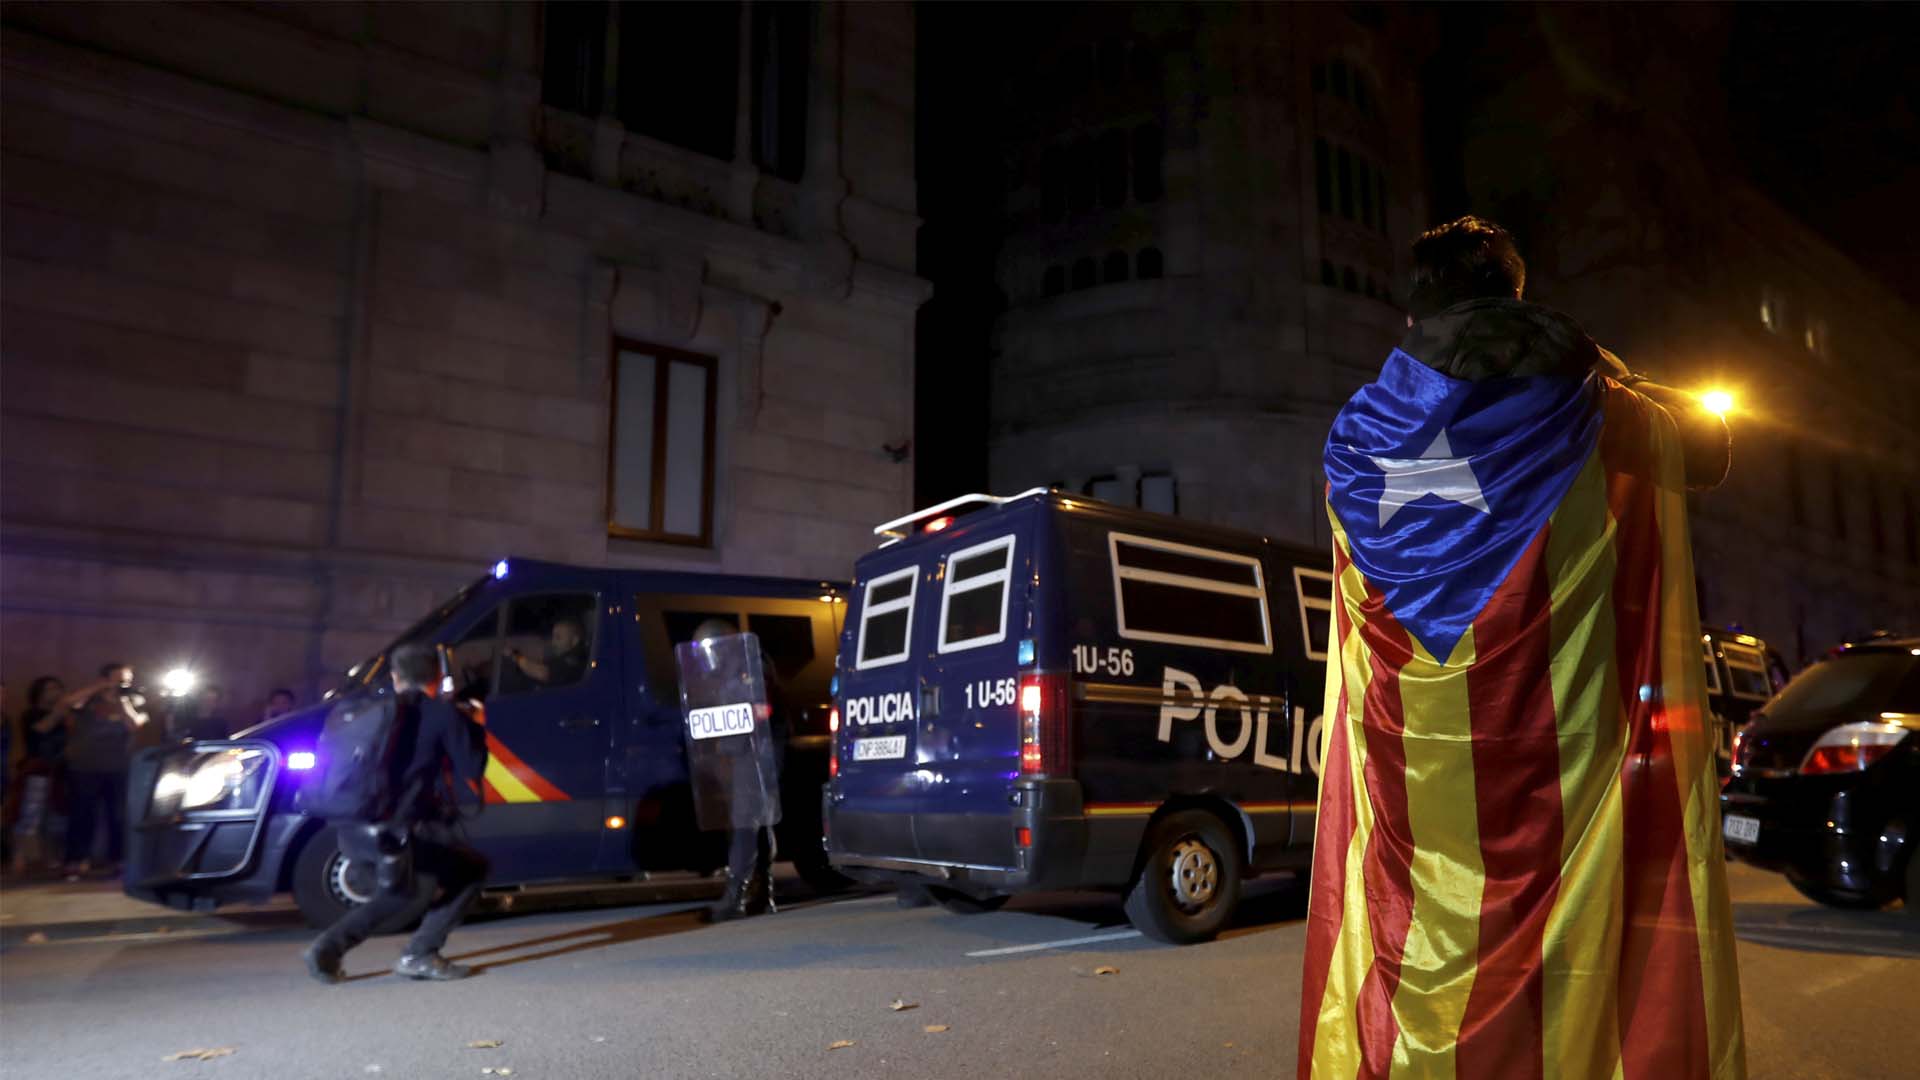 Interior retirará el dispositivo policial de refuerzo en Cataluña el 30 de diciembre